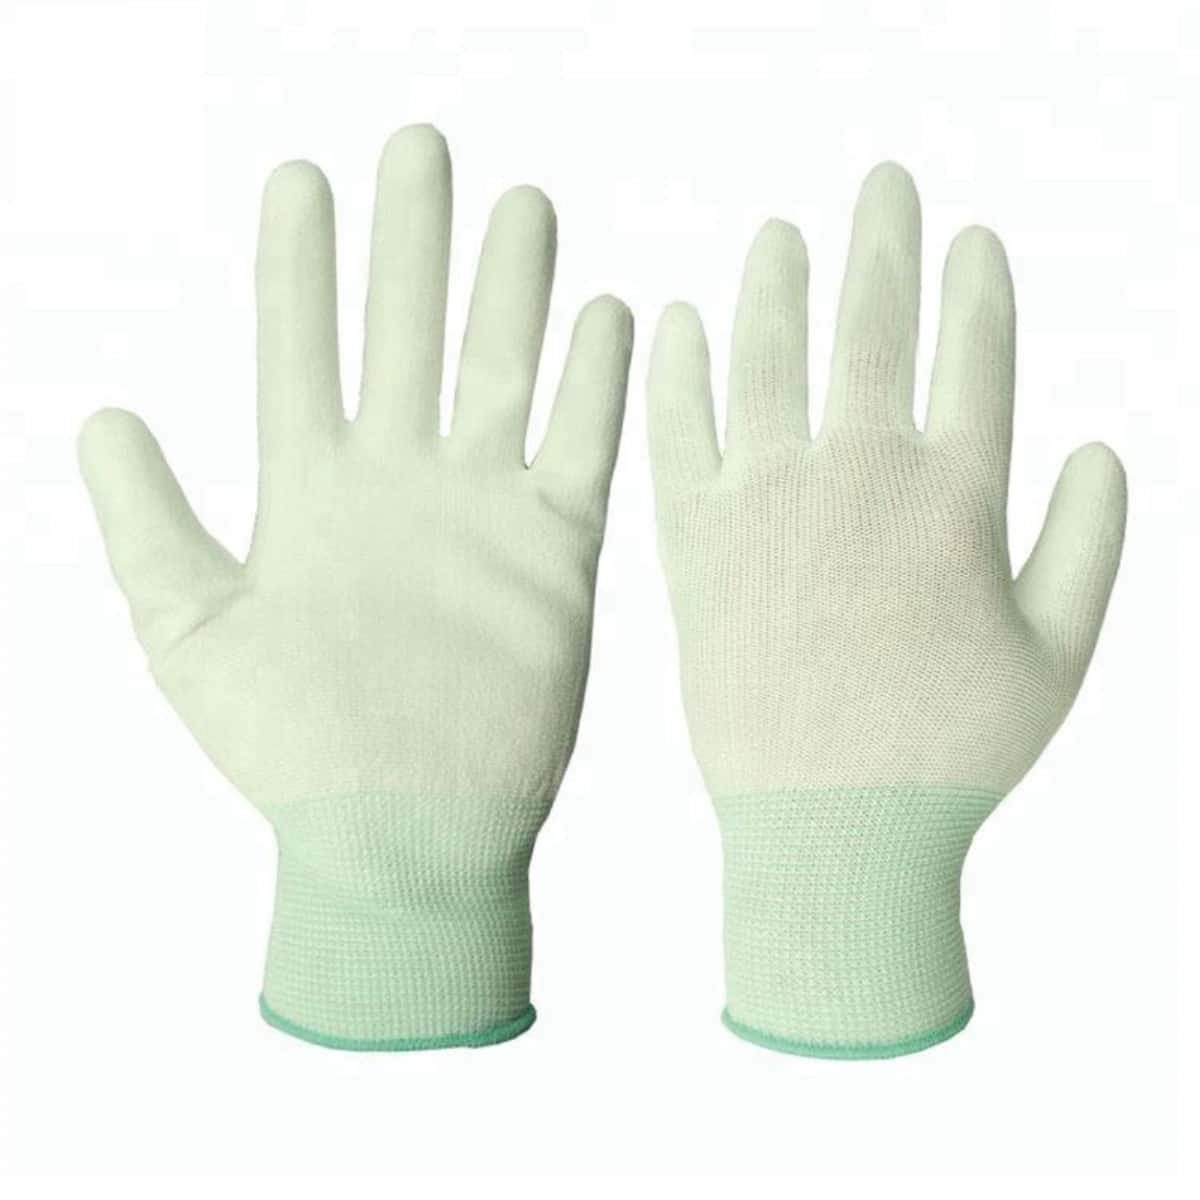 Białe, poliestrowe rękawice robocze powlekane dłonią PU o grubości 13